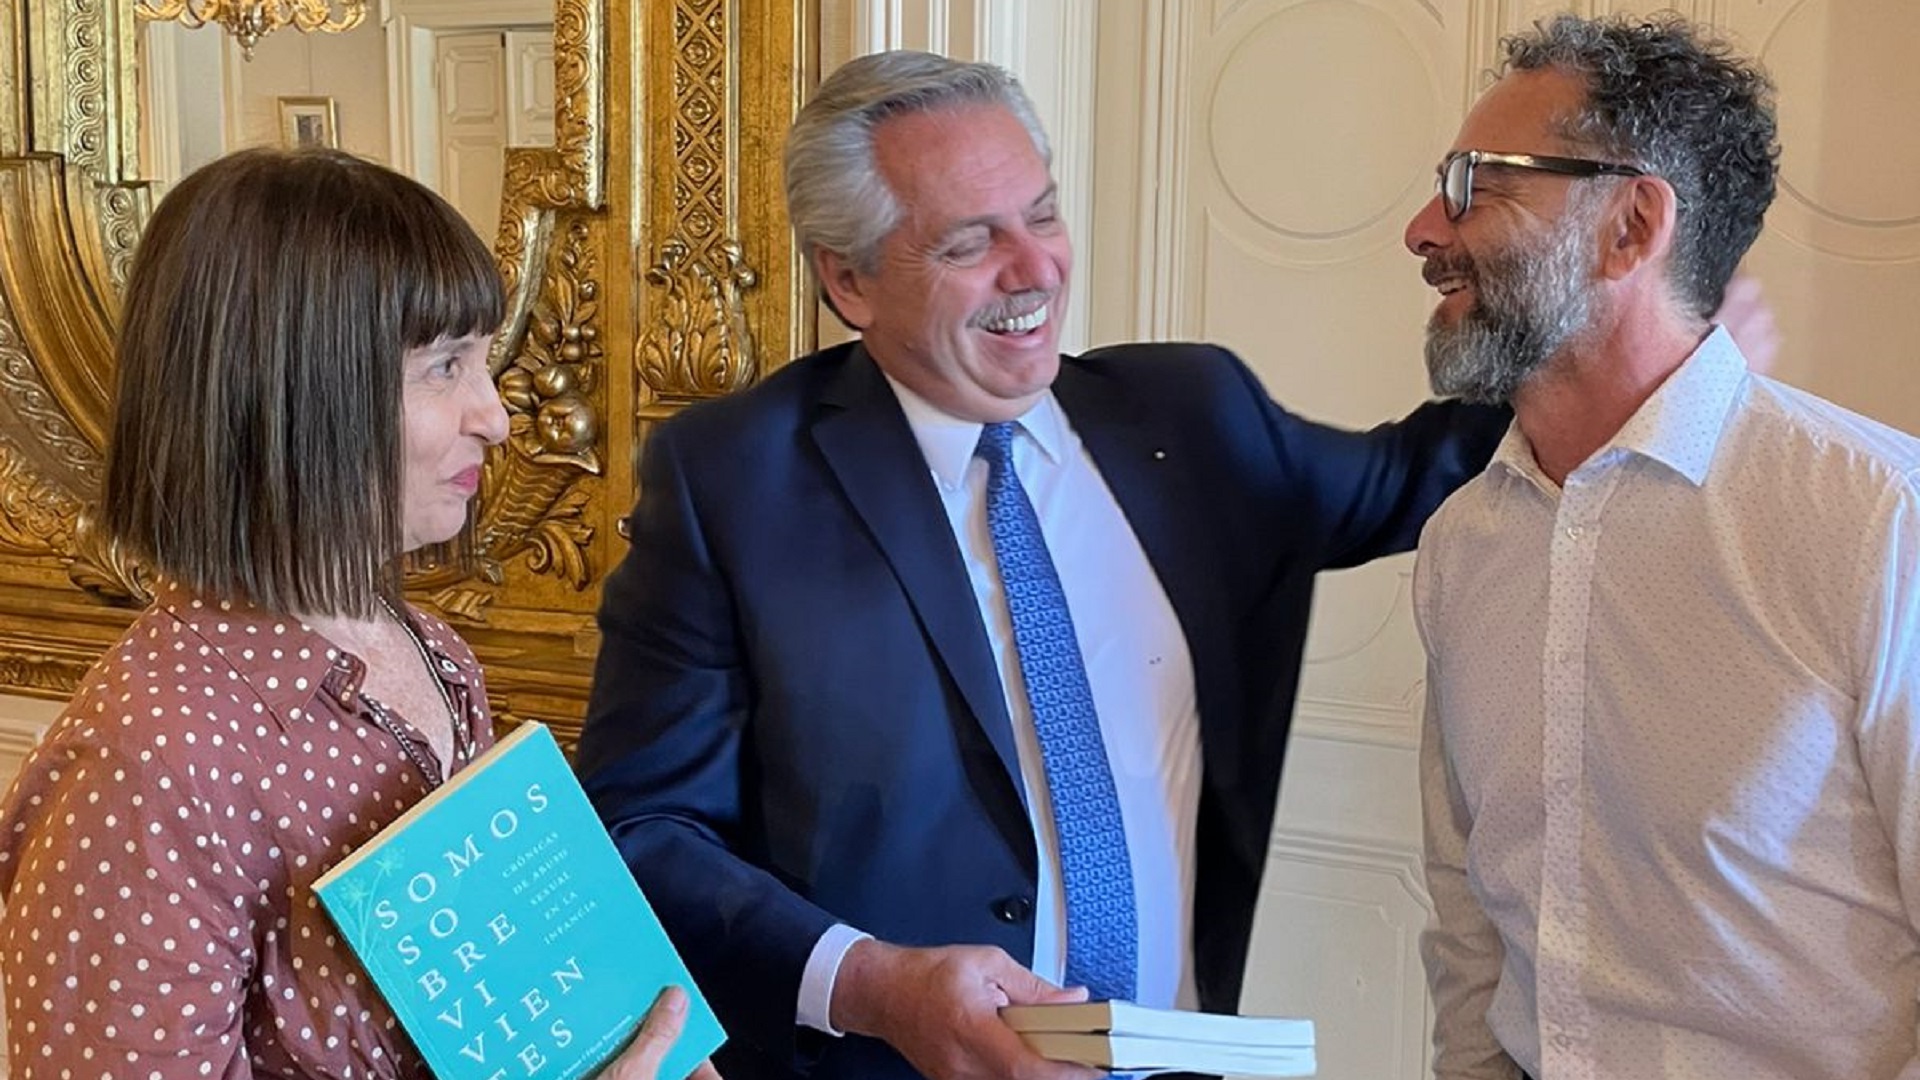 Claudia Aboaf, Alberto Fernández y Fabián Martínez Siccardi el día que los autores le hicieron llegar un libro al Presidente.